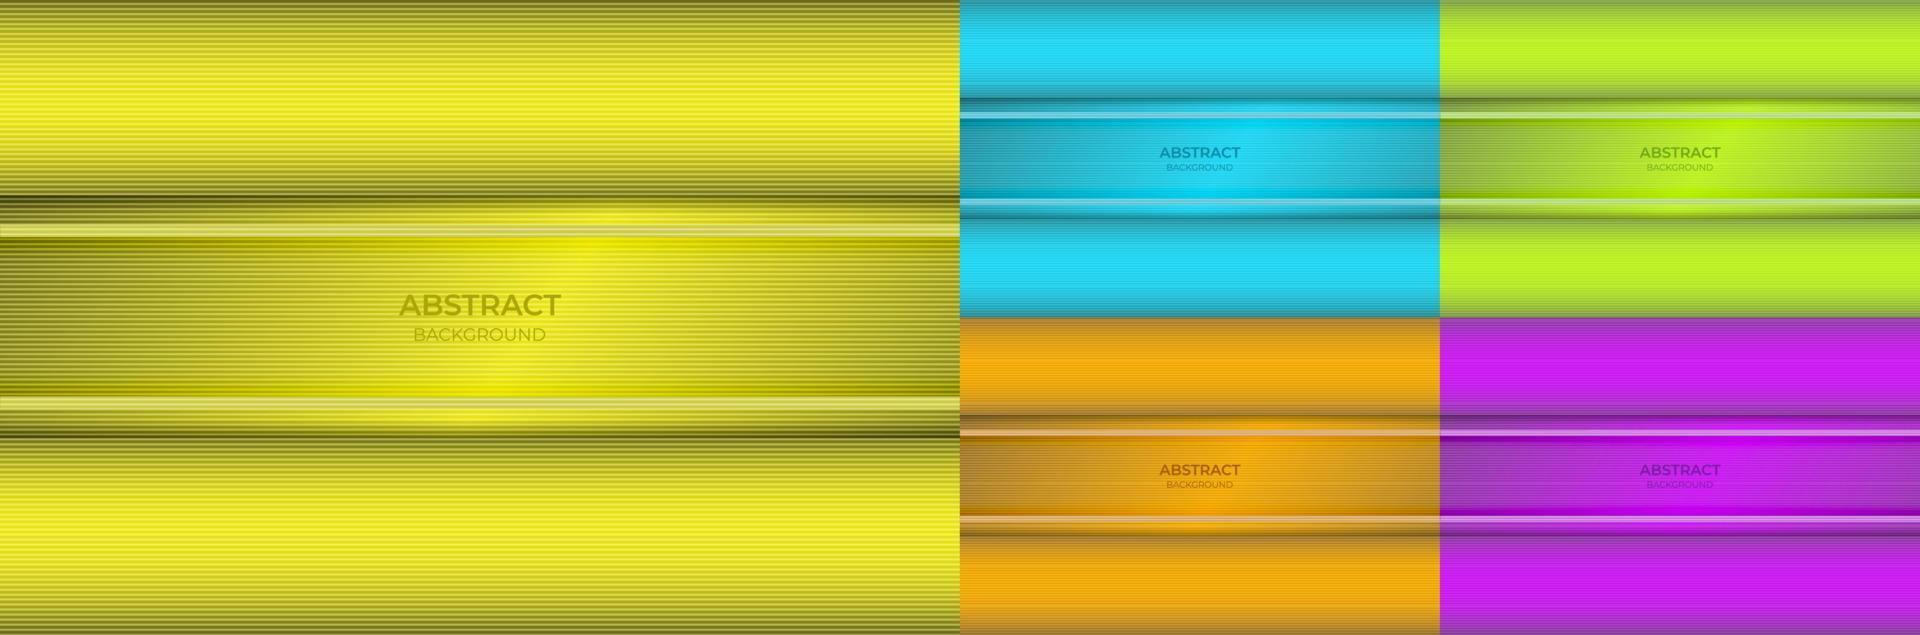 fundo abstrato gradiente colorido mínimo cor amarela, azul, verde, laranja e roxa bonita com textura de linha leve. ilustração vetorial vetor